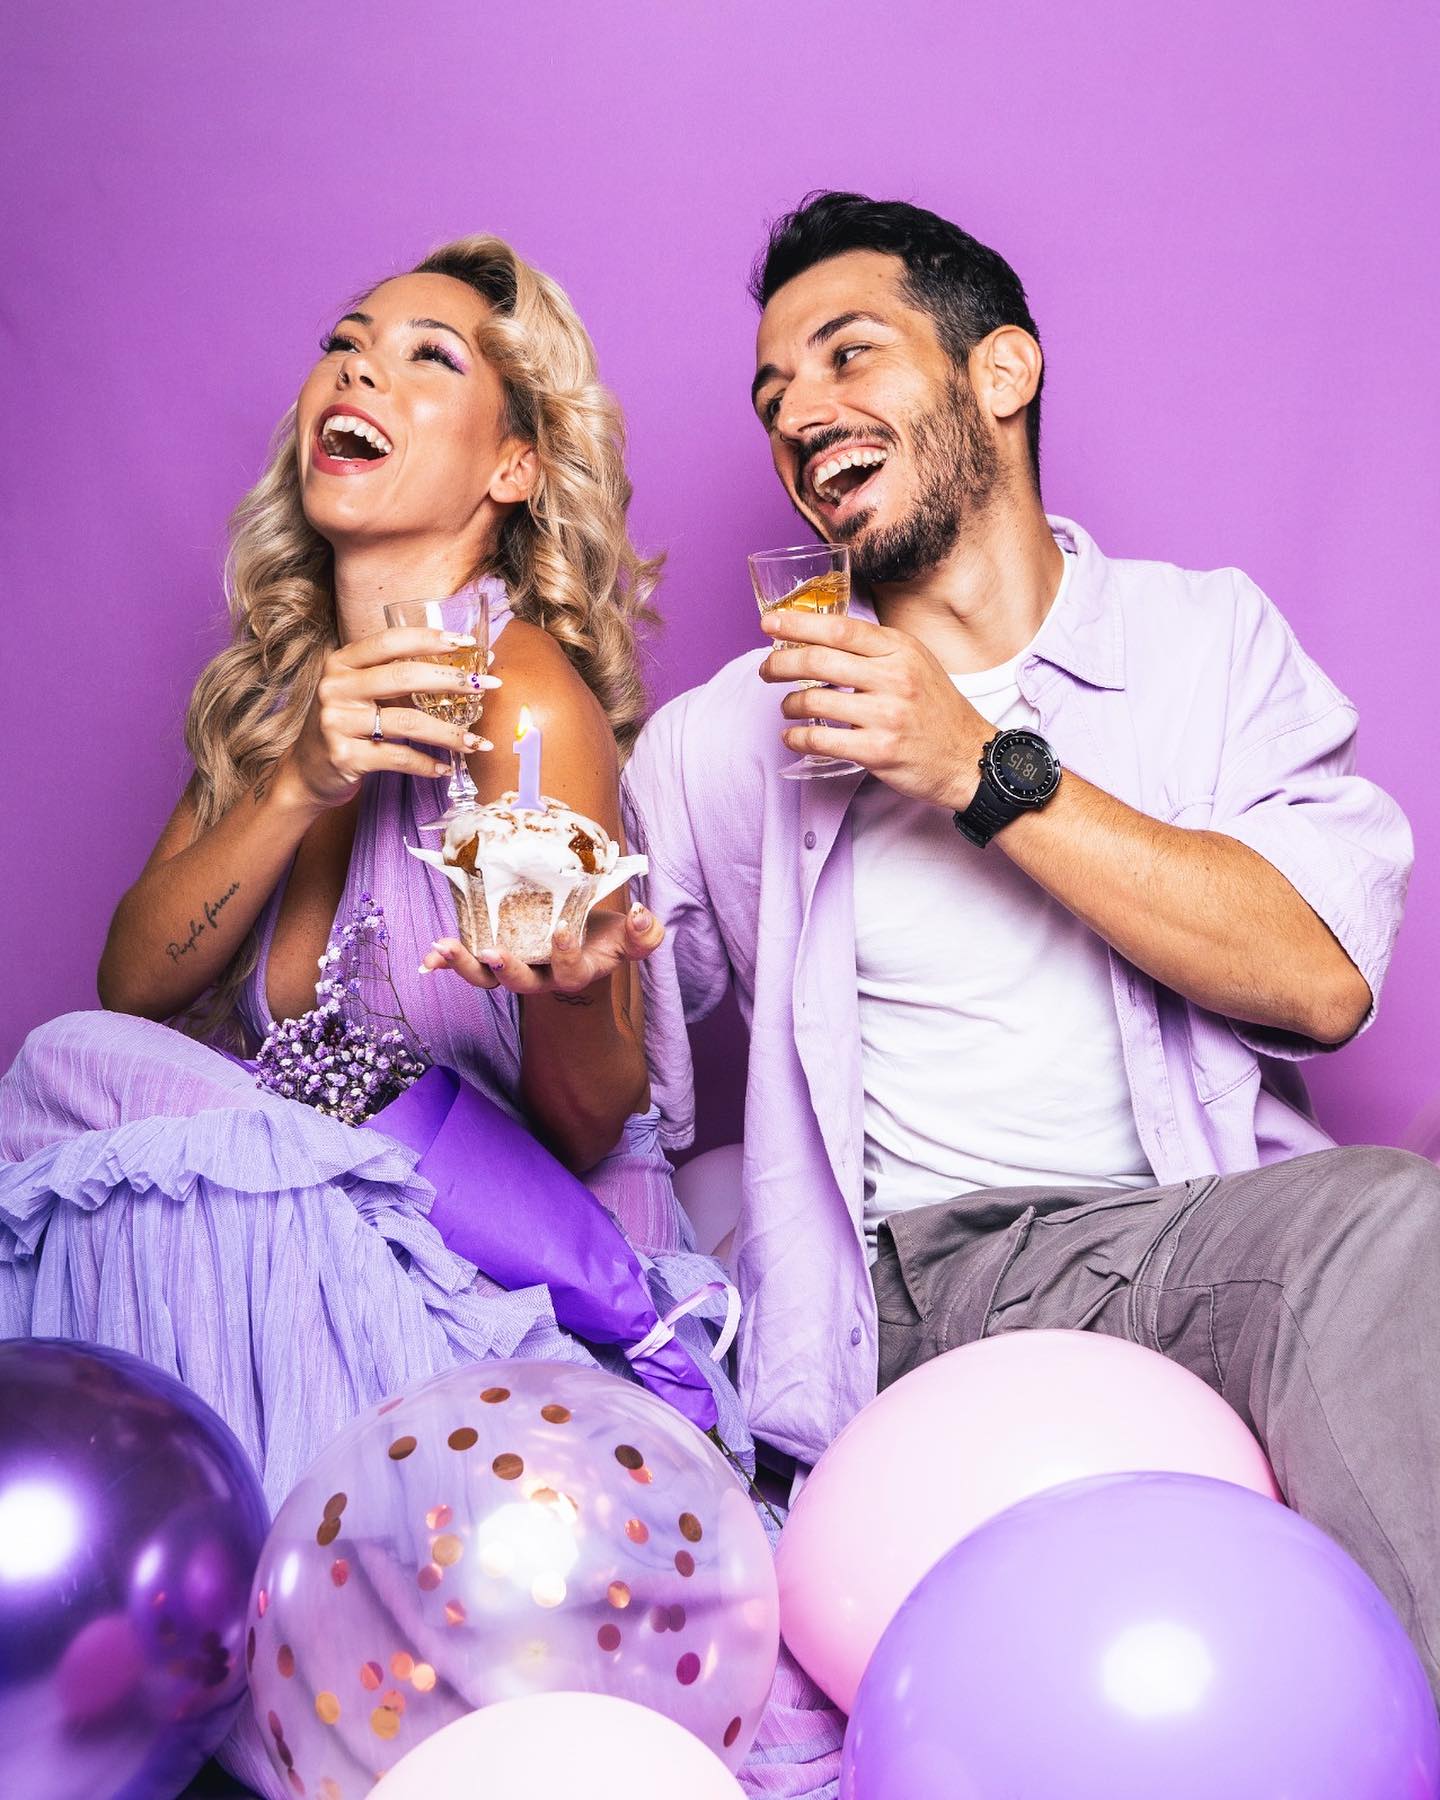 Pareja riendo y celebrando con bebidas y un cupcake en un ambiente festivo con globos.